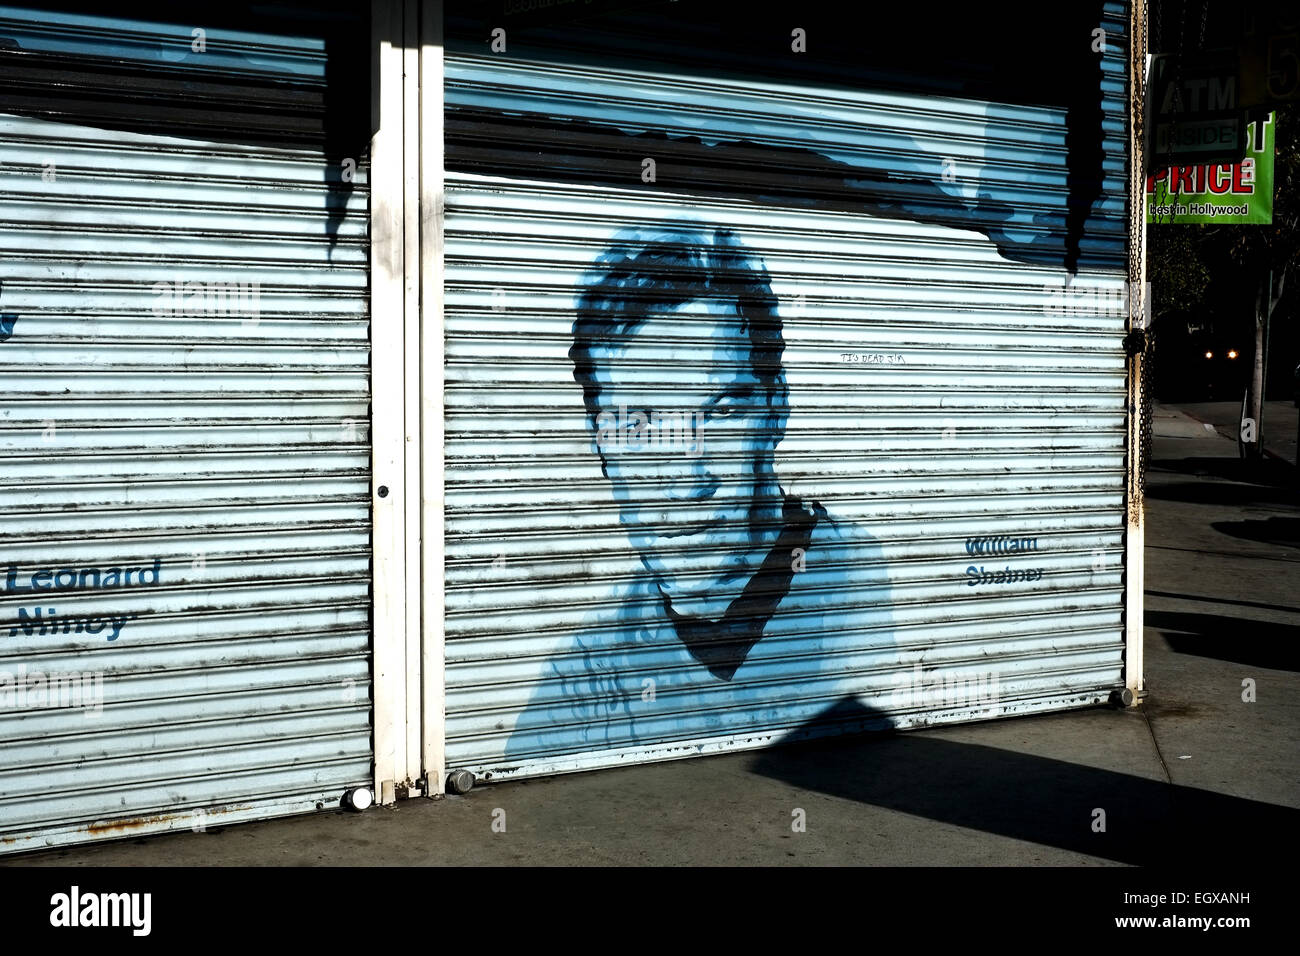 Graffiti / street art of William Shatner as Captain James T Kirk from Star Trek Stock Photo